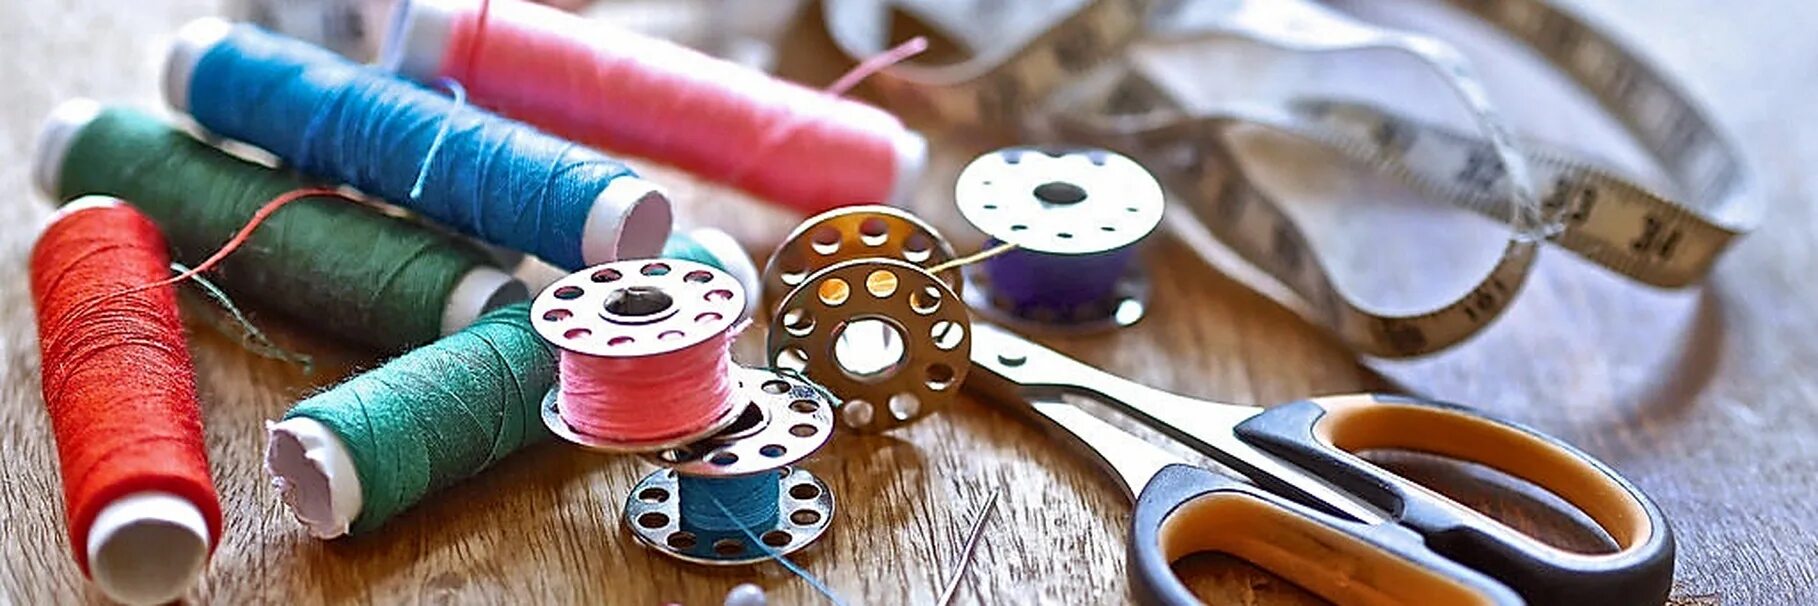 Швейная игла и нитки. Принадлежности для шитья. Ножницы для ниток. Материалы и инструменты для шитья. Приспособления для шитья и рукоделия.